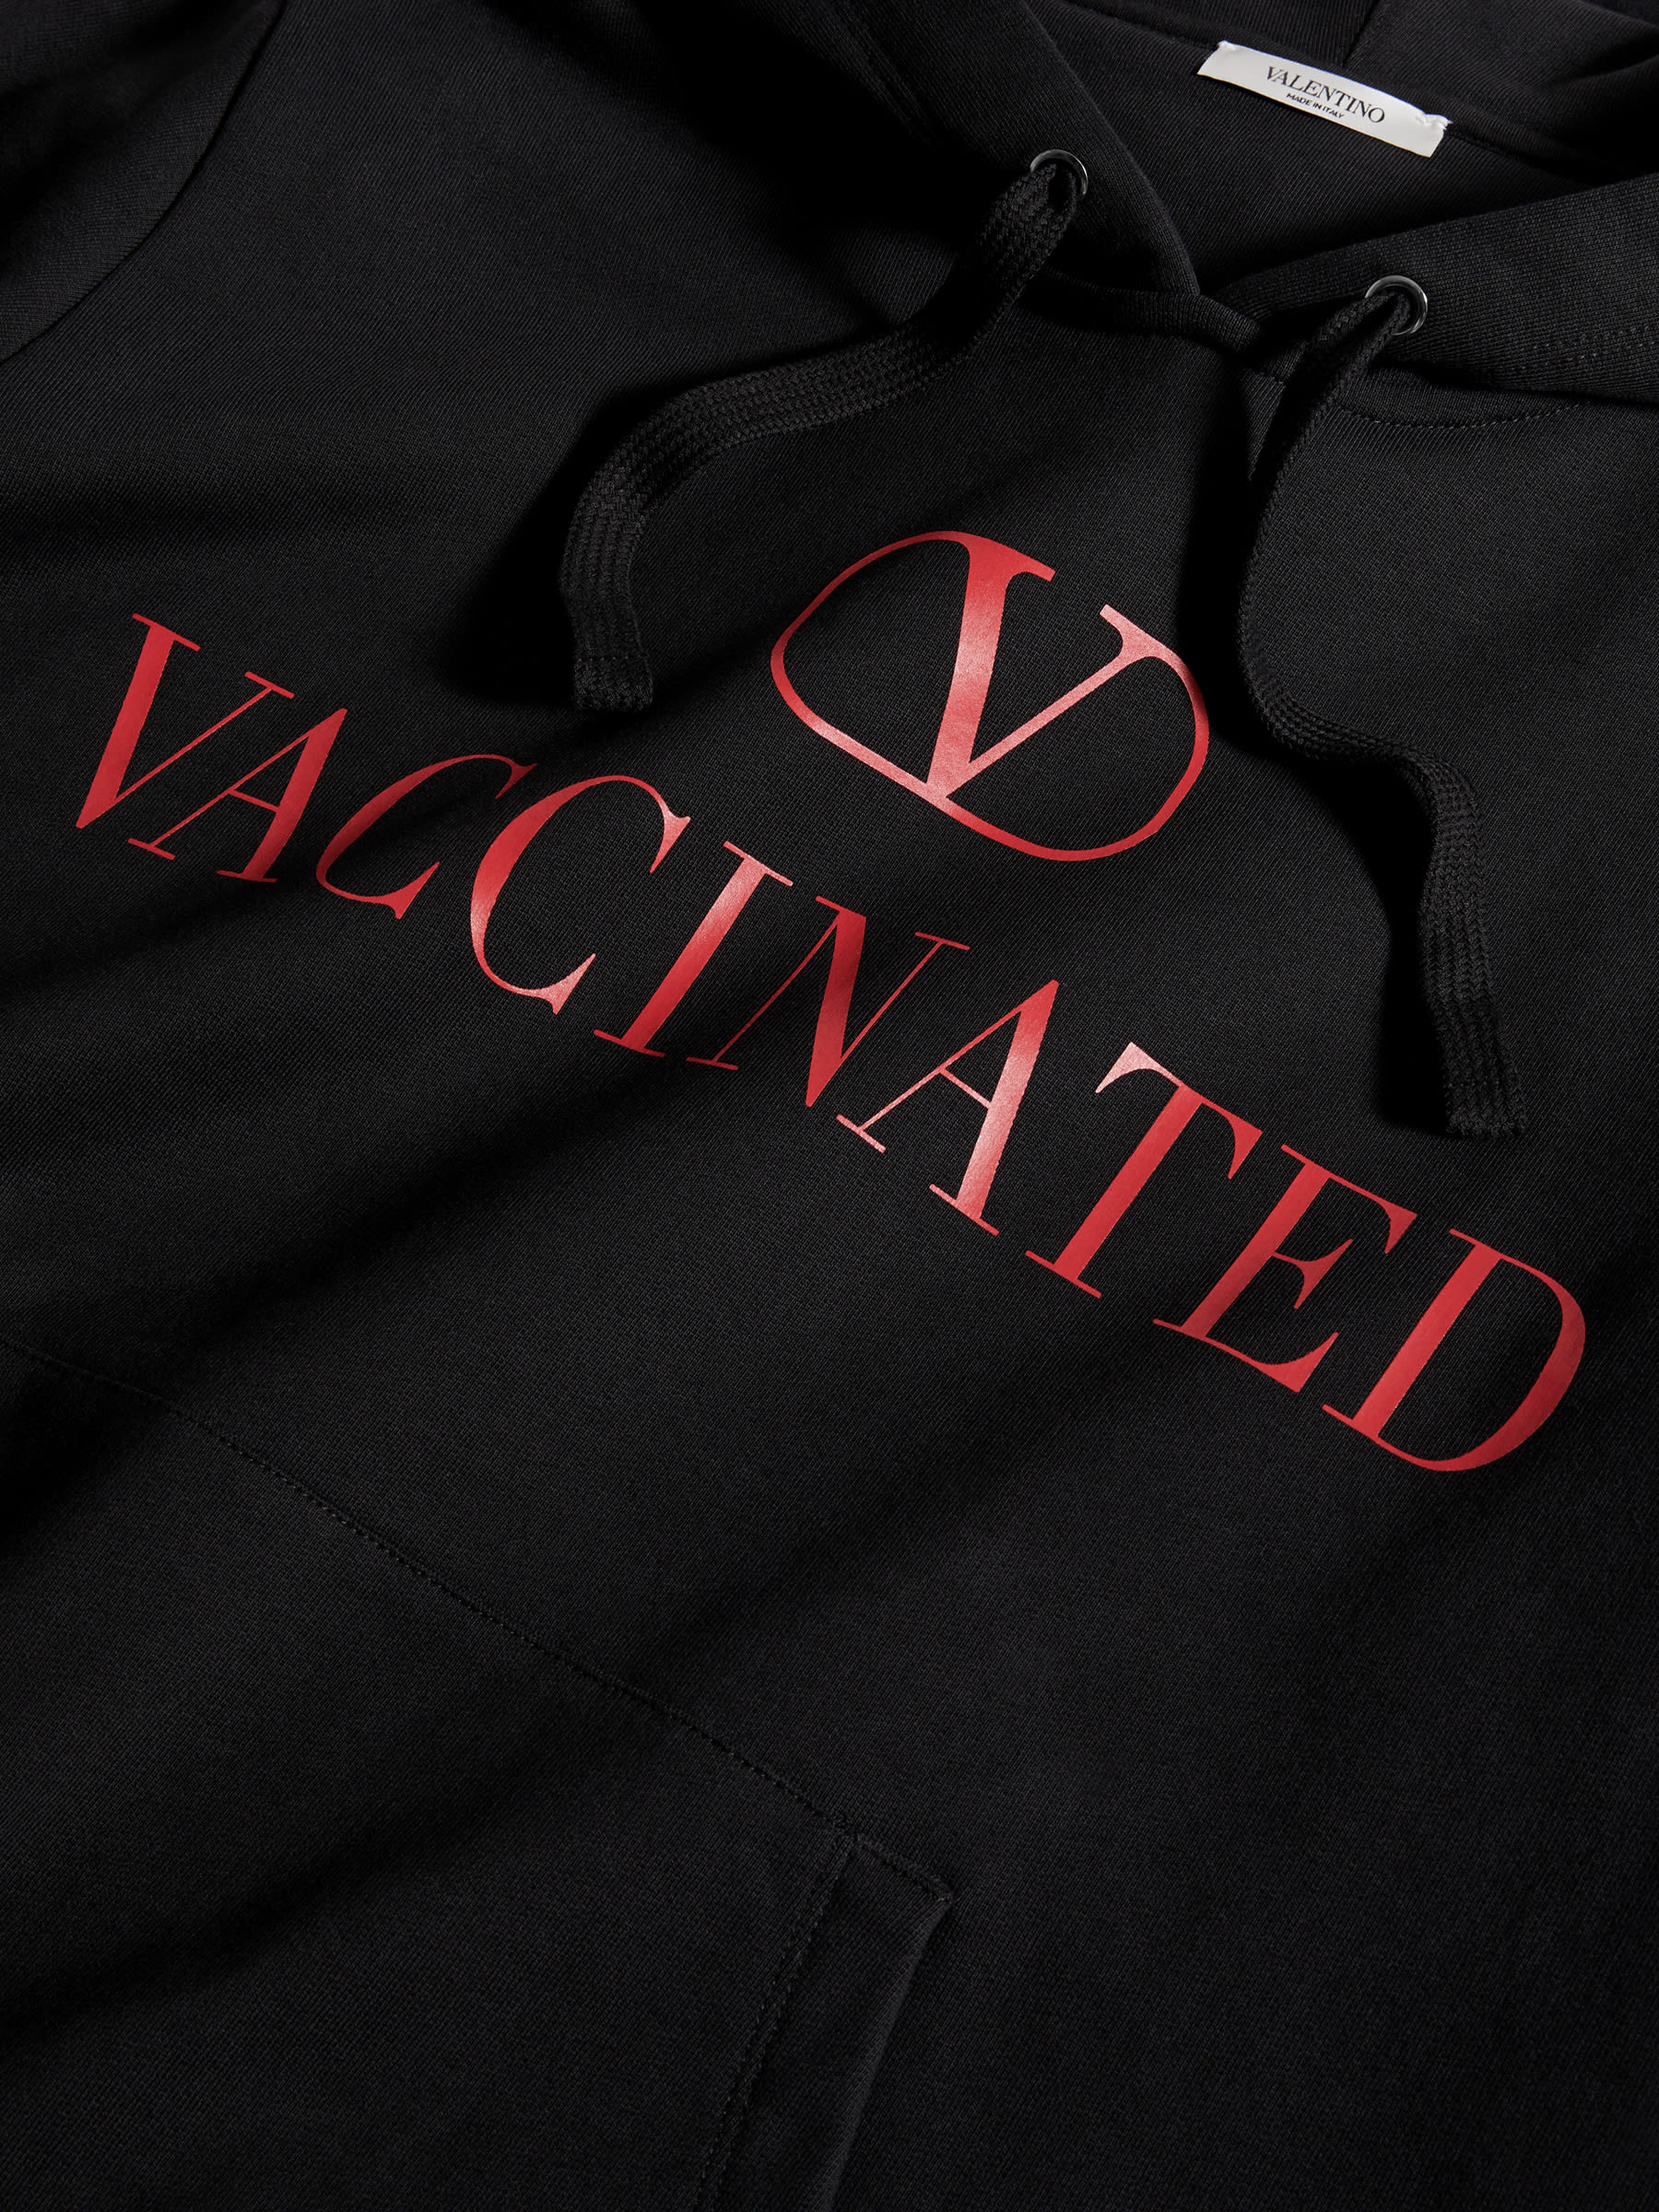 ヴァレンティノから「ワクチン接種済み」フーディーが登場、ワクチン 